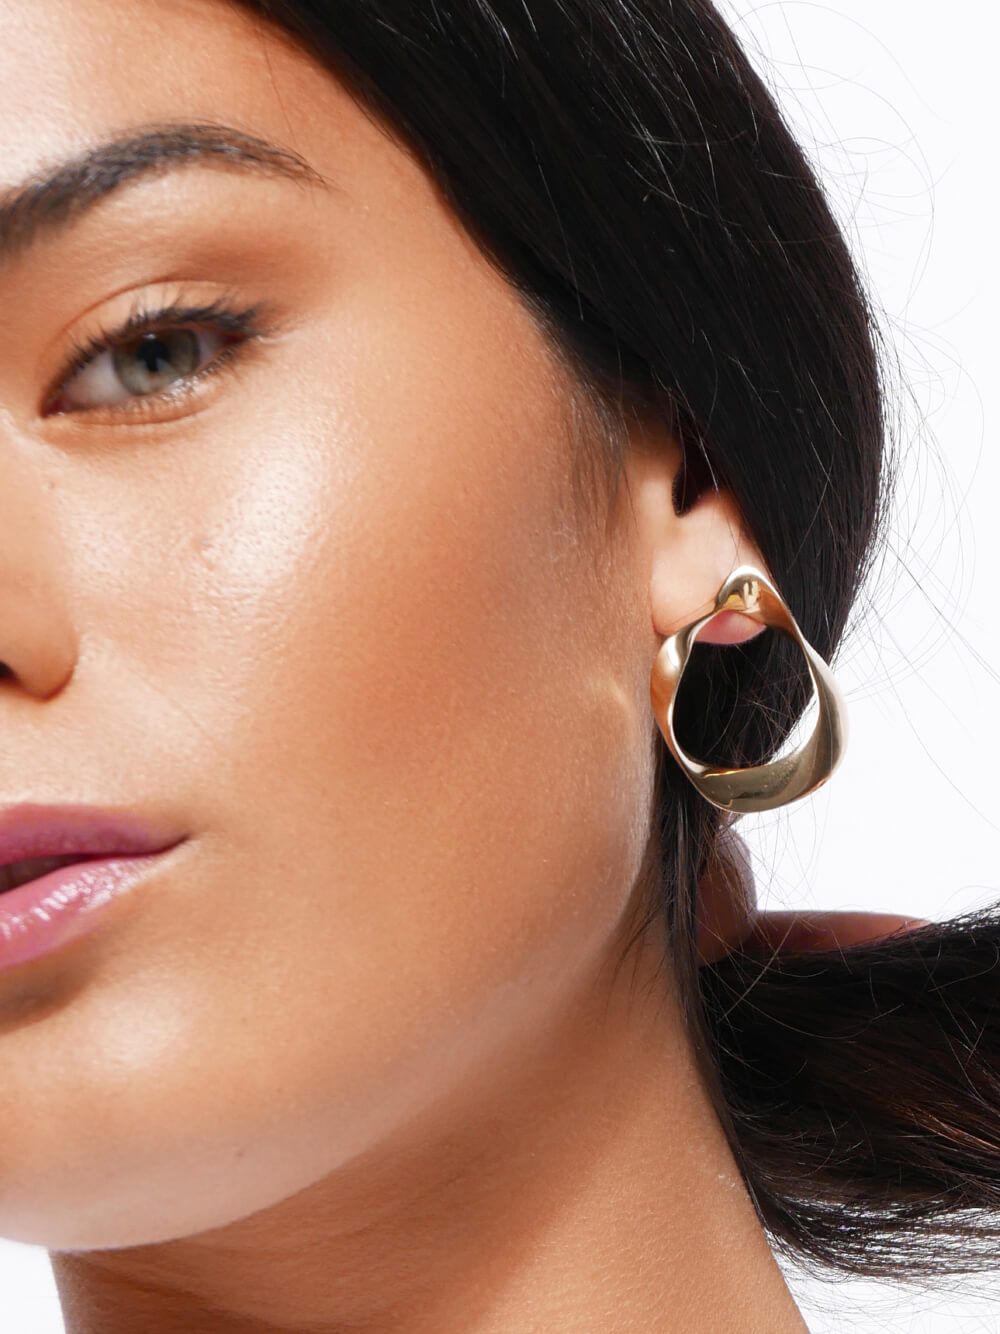 Gold Fluid Earrings | Kimsu